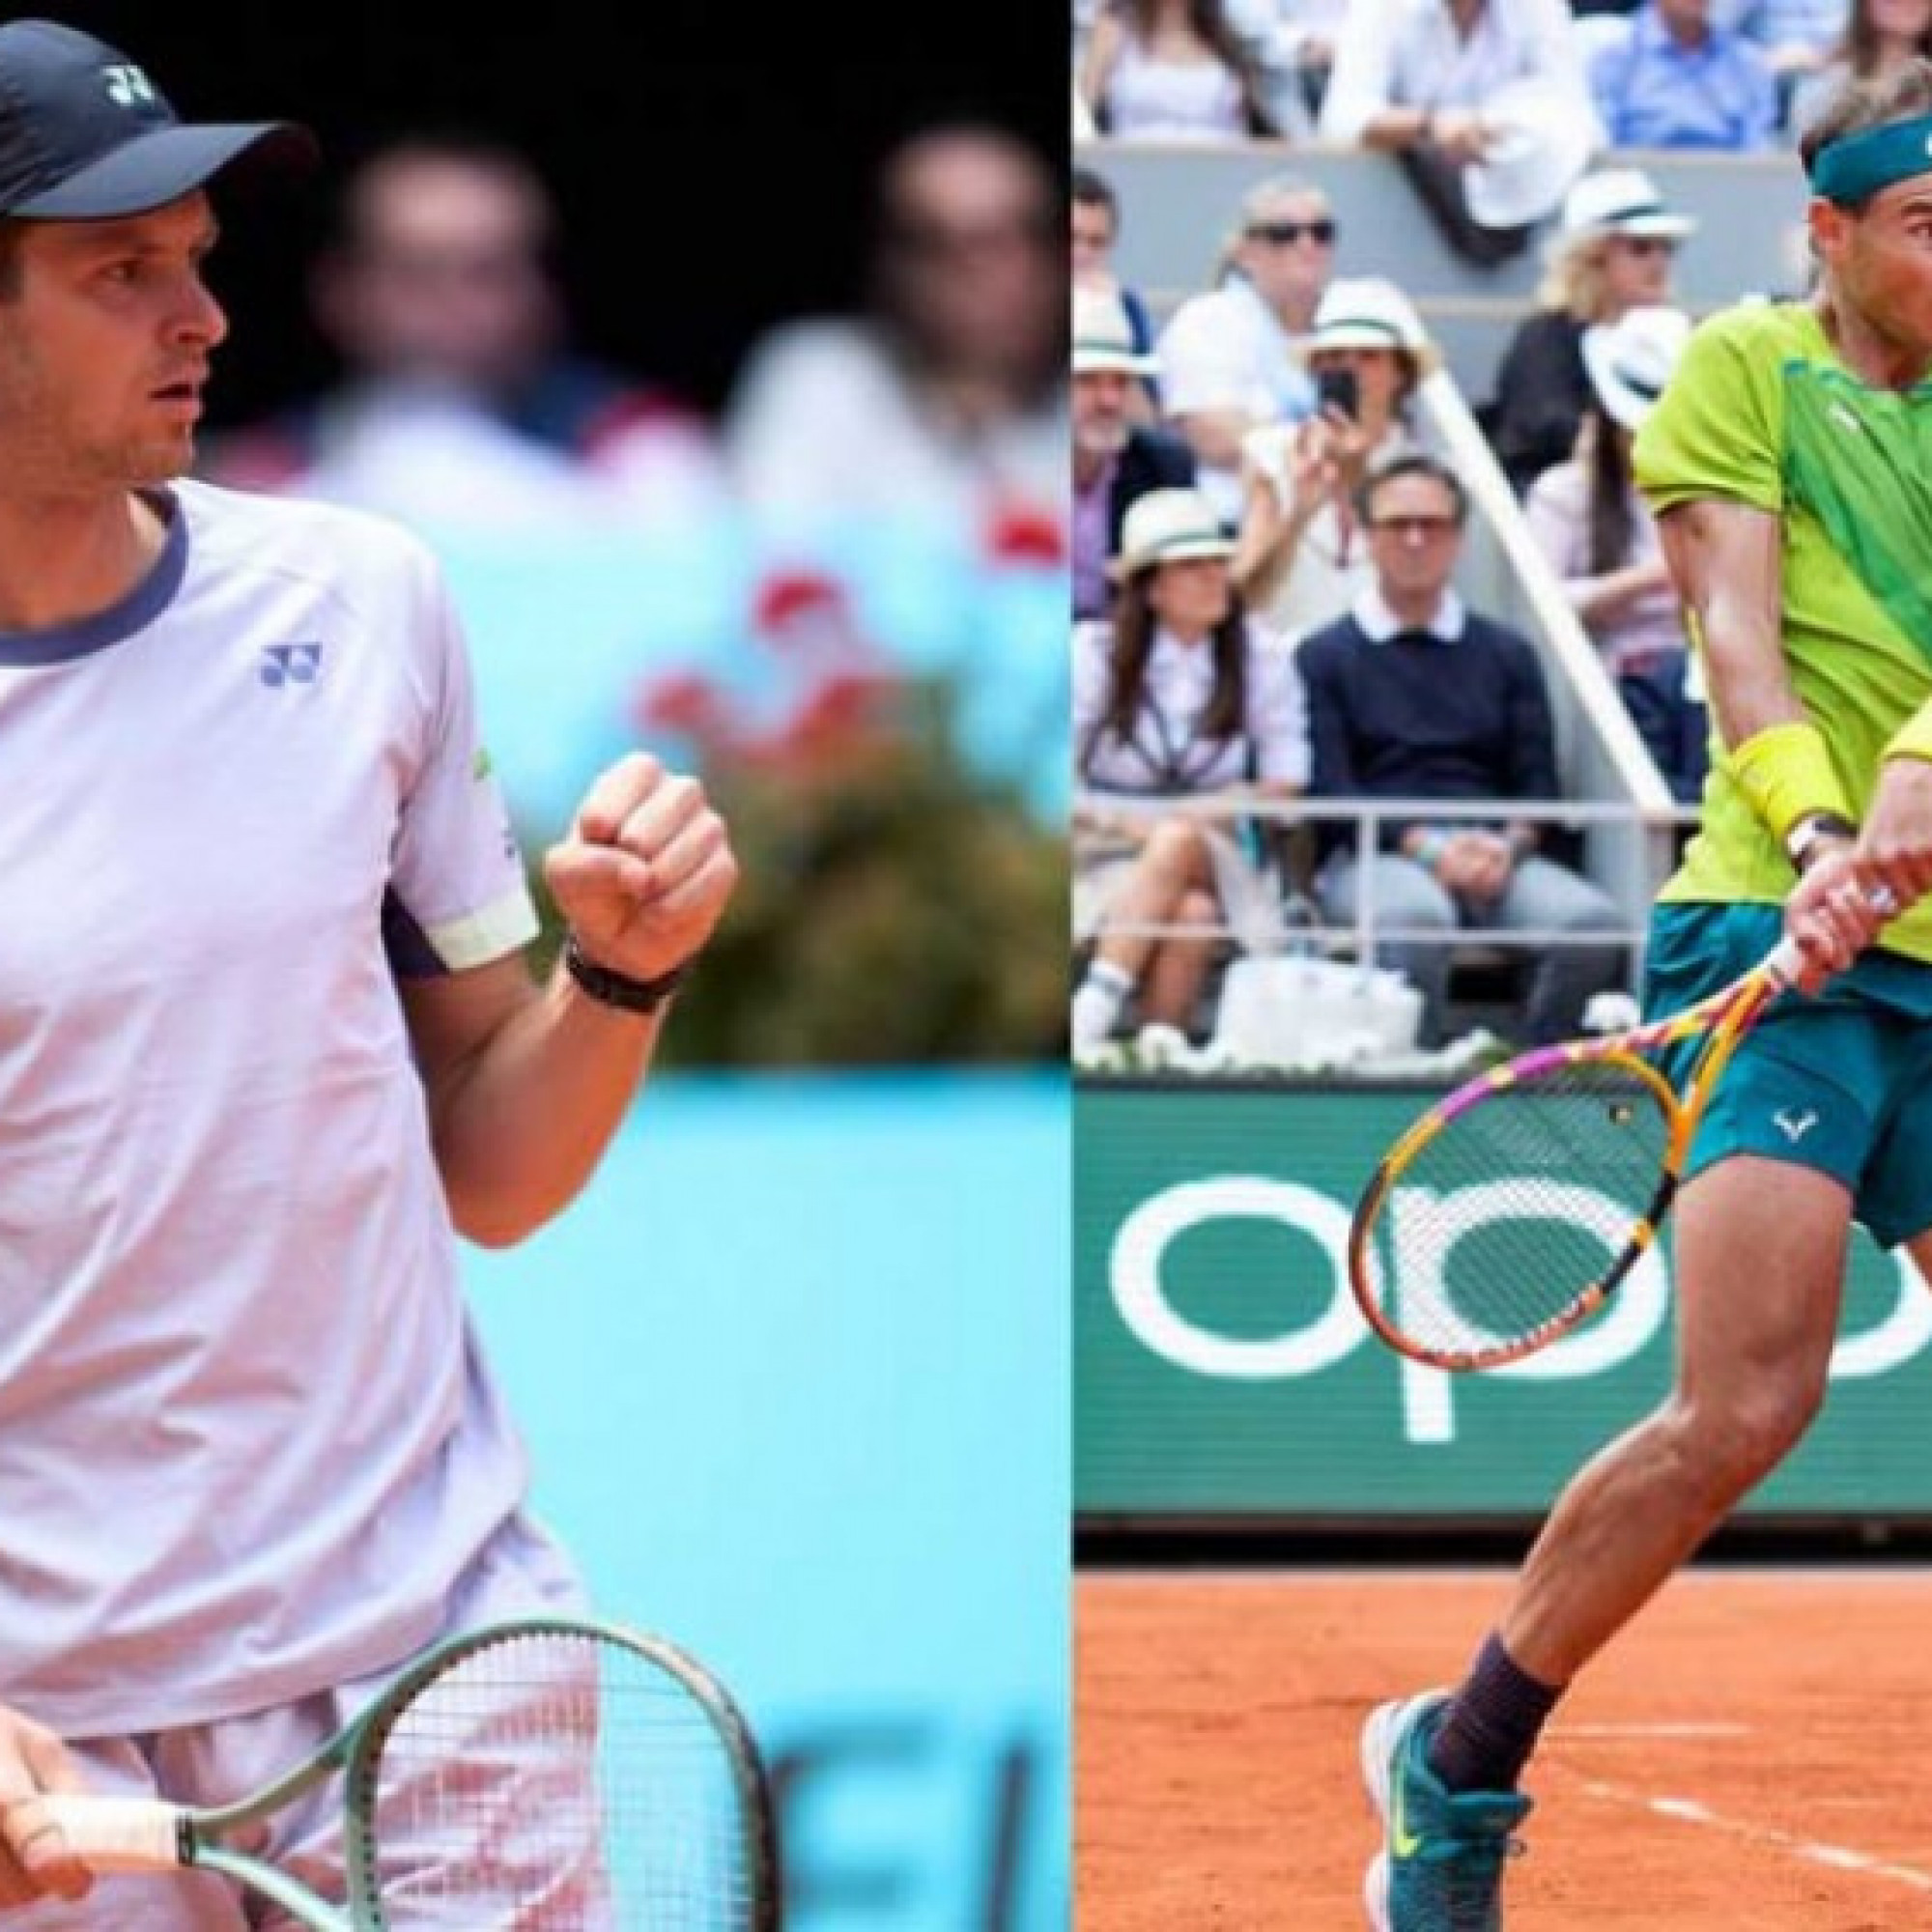  - Trực tiếp tennis Hurkacz - Nadal: 2 cú bỏ nhỏ hỏng, Nadal mất 2 break (Rome Open)